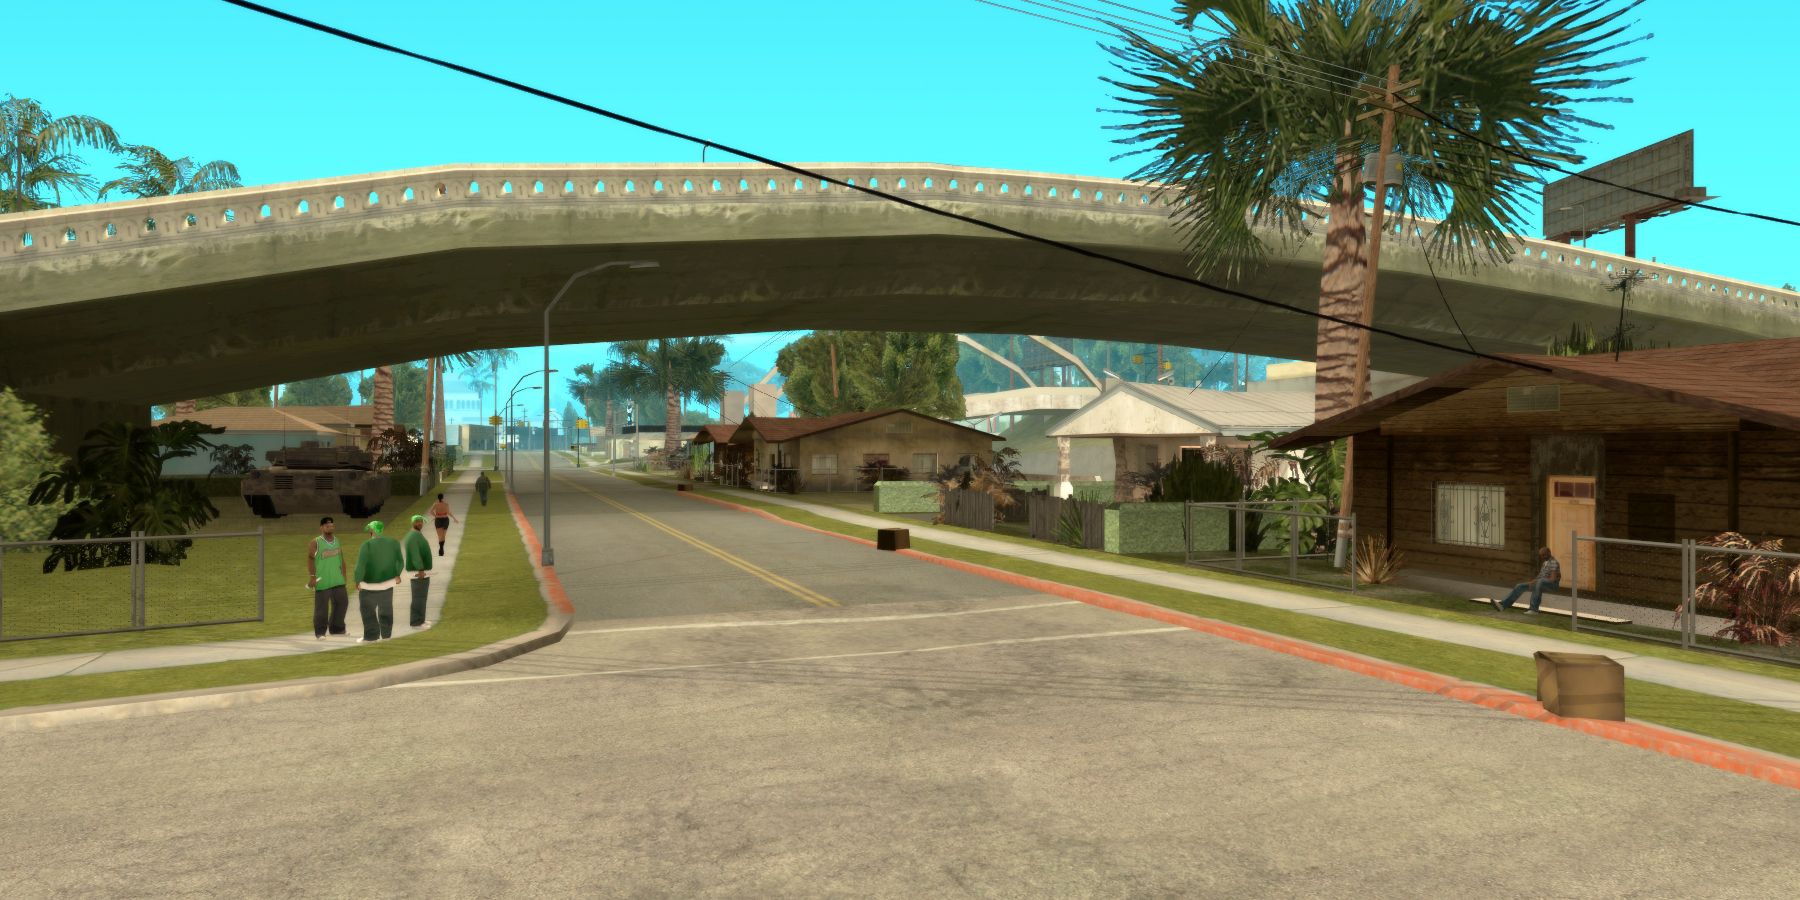 Изображение из увеличенной версии Grand Theft Auto: San Andreas, показывающее Гроув-стрит.